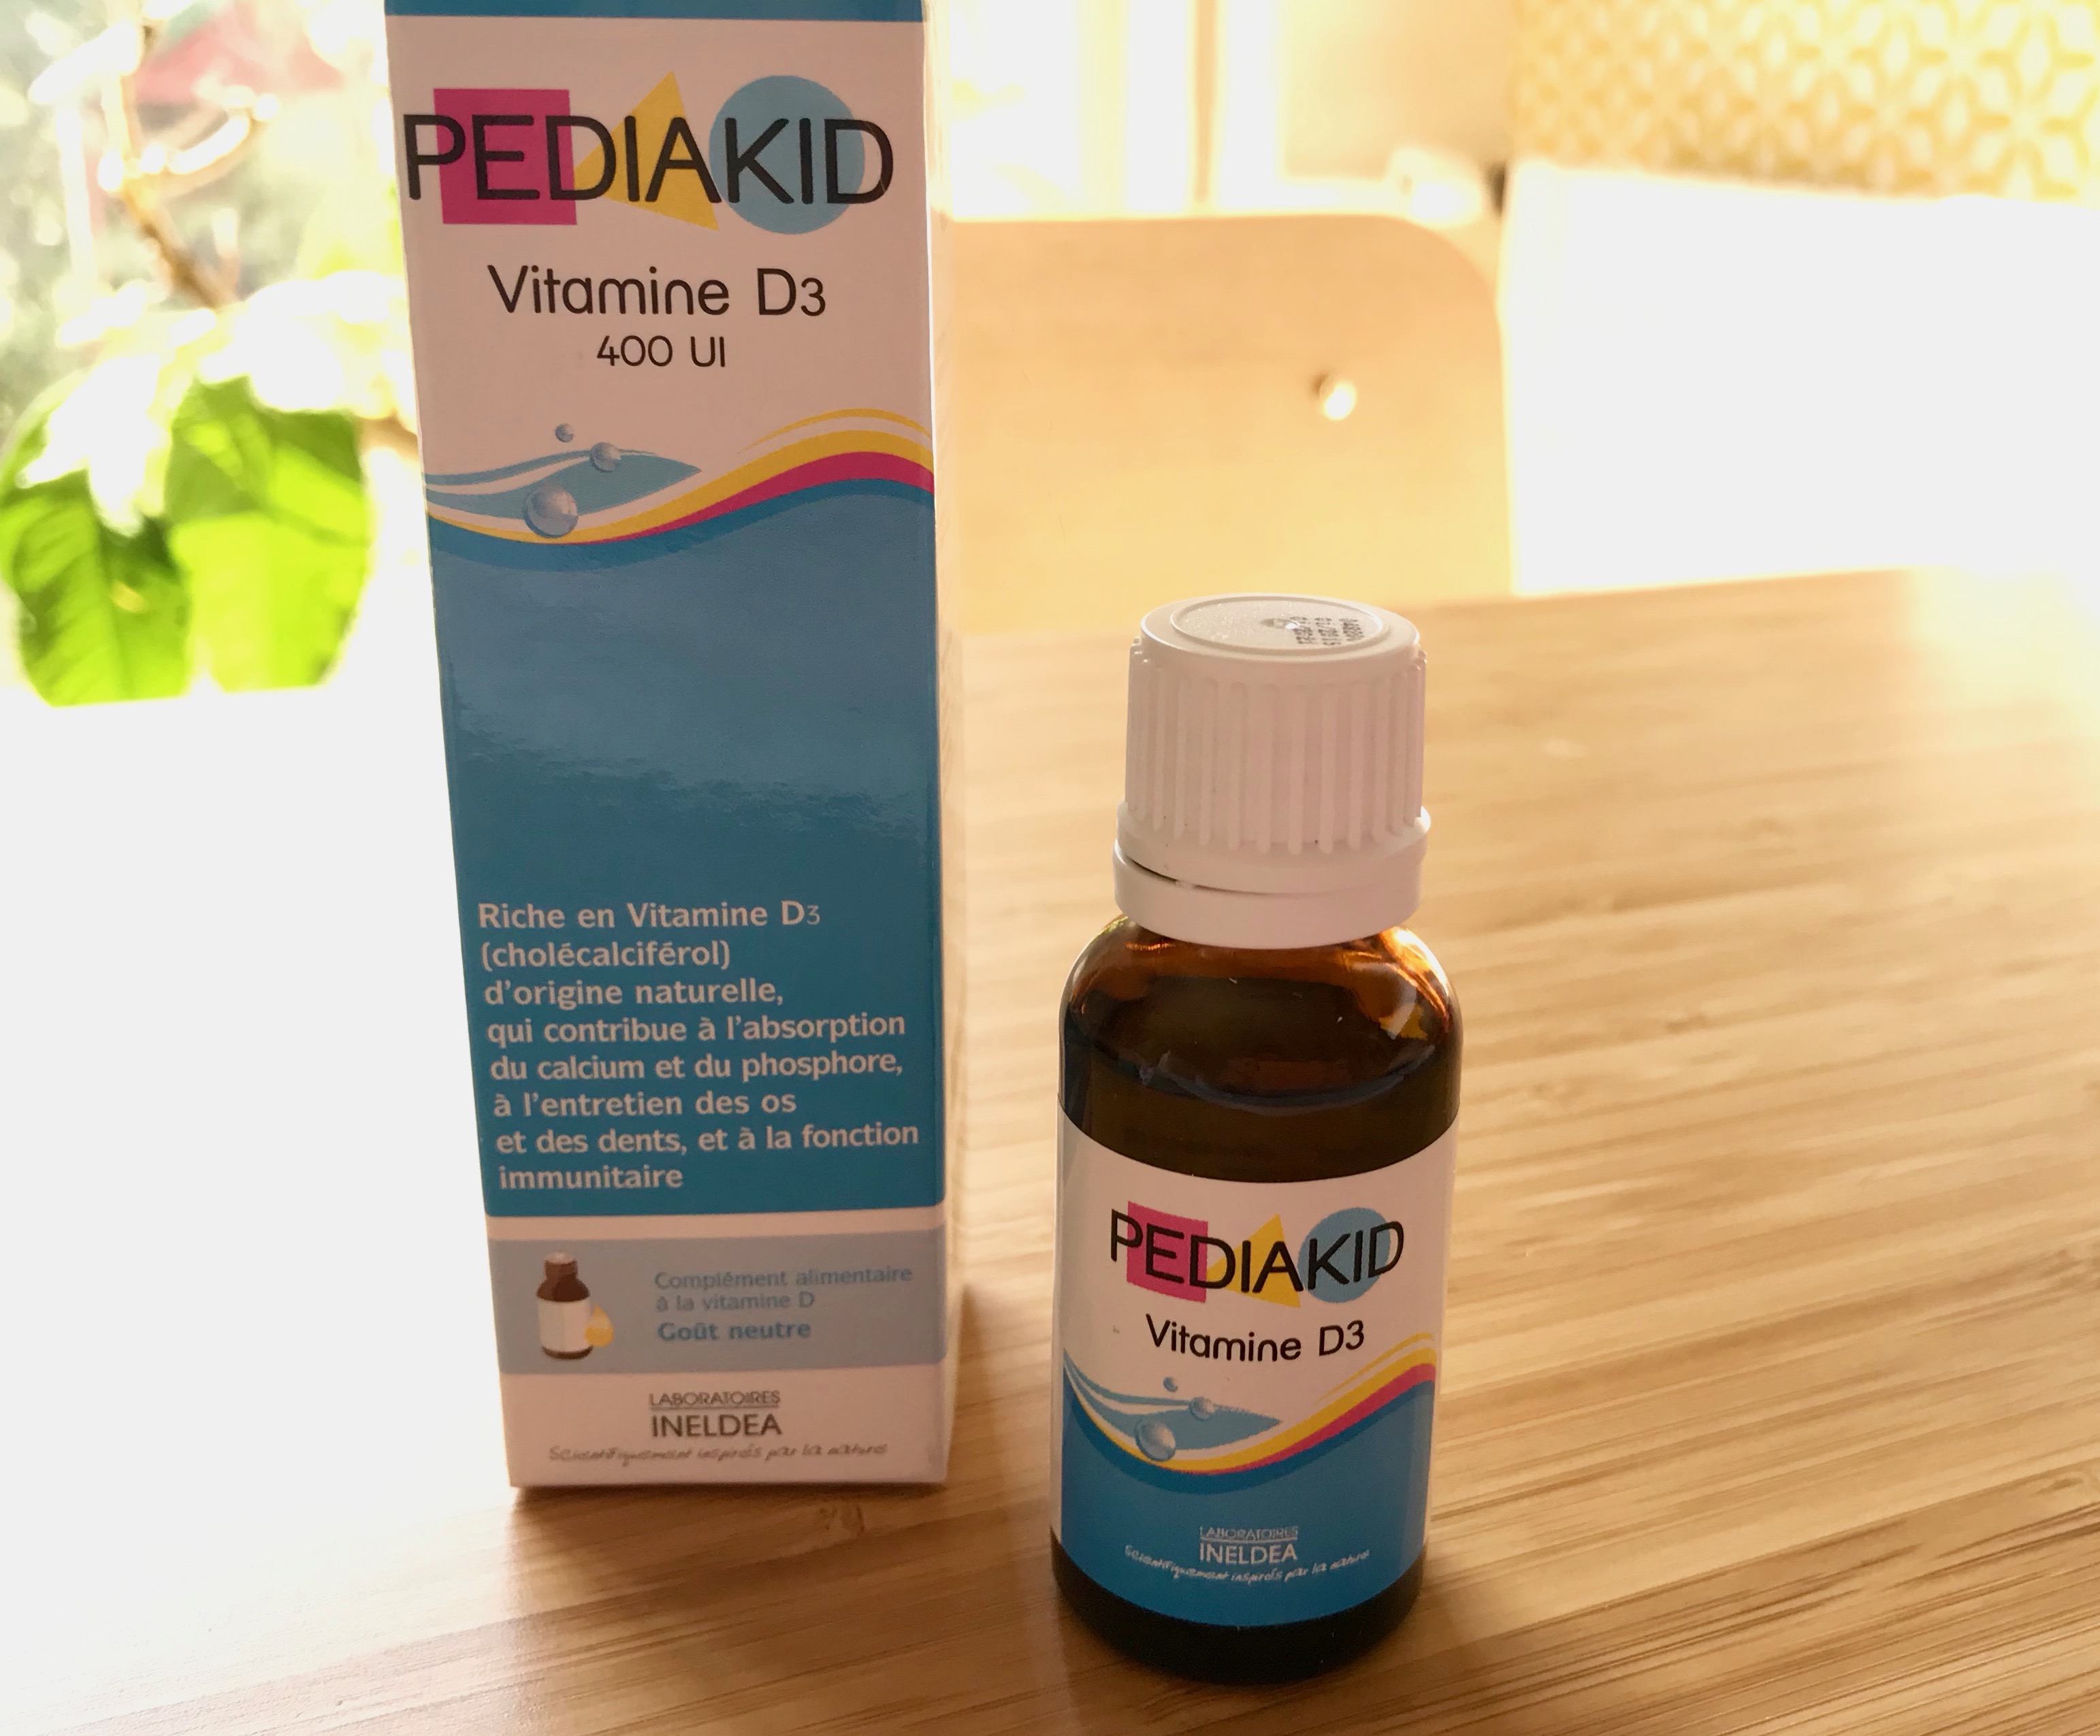 Pediakid - Je donne PEDIAKID Vitamine D3 à ma fille (qui a aujourd'hui 4  mois) depuis sa naissance sur recommandation de mon pédiatre, pour subvenir  à ses besoins en Vitamine D, mais